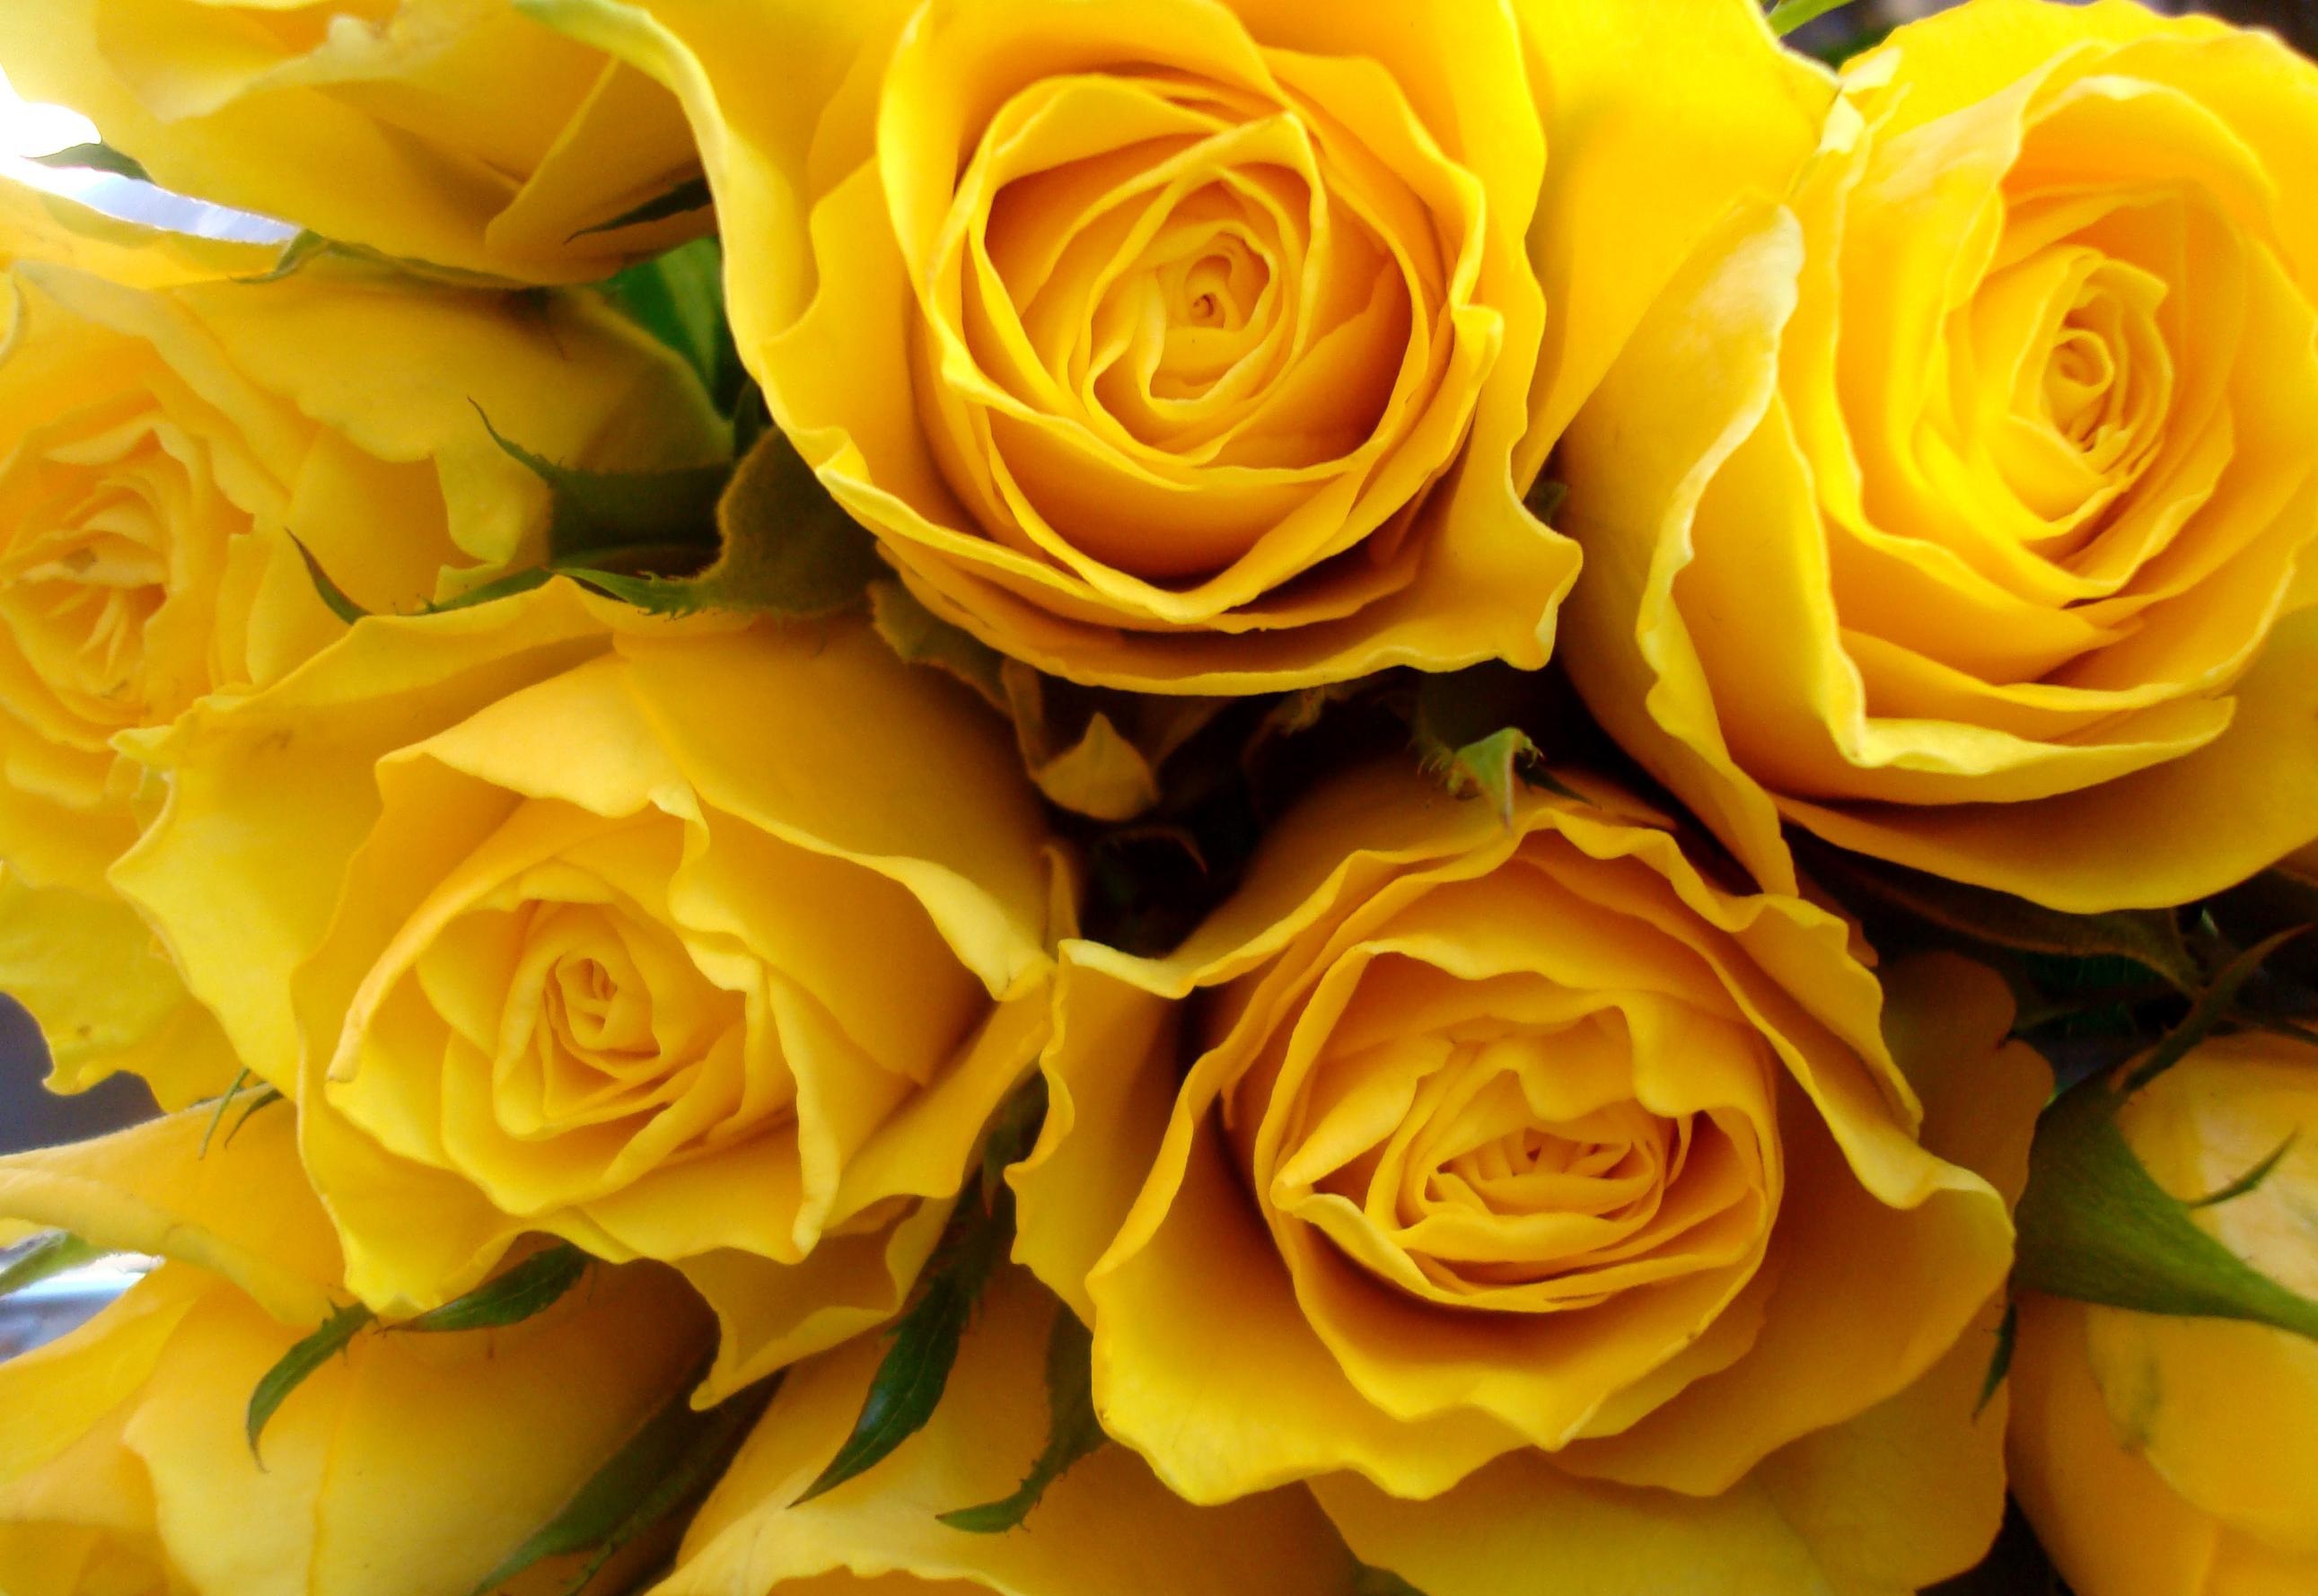 Фото необычного сорта желтых роз